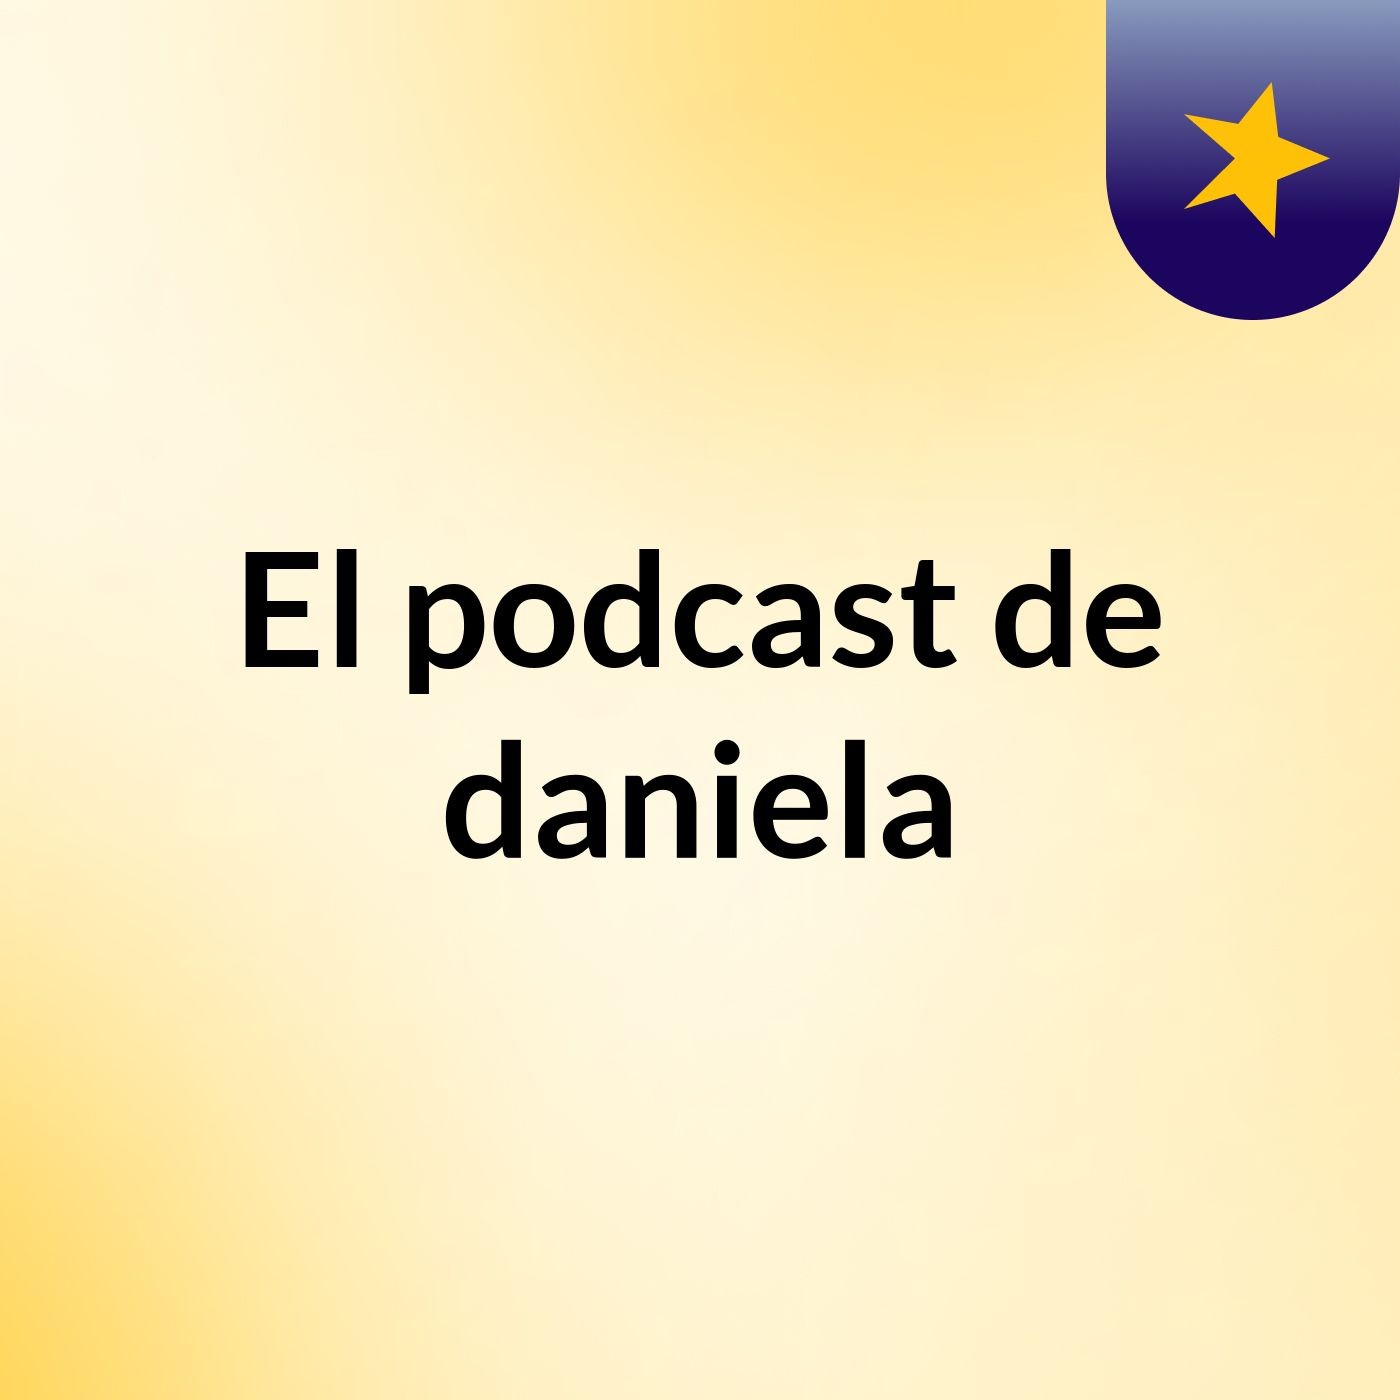 El podcast de daniela